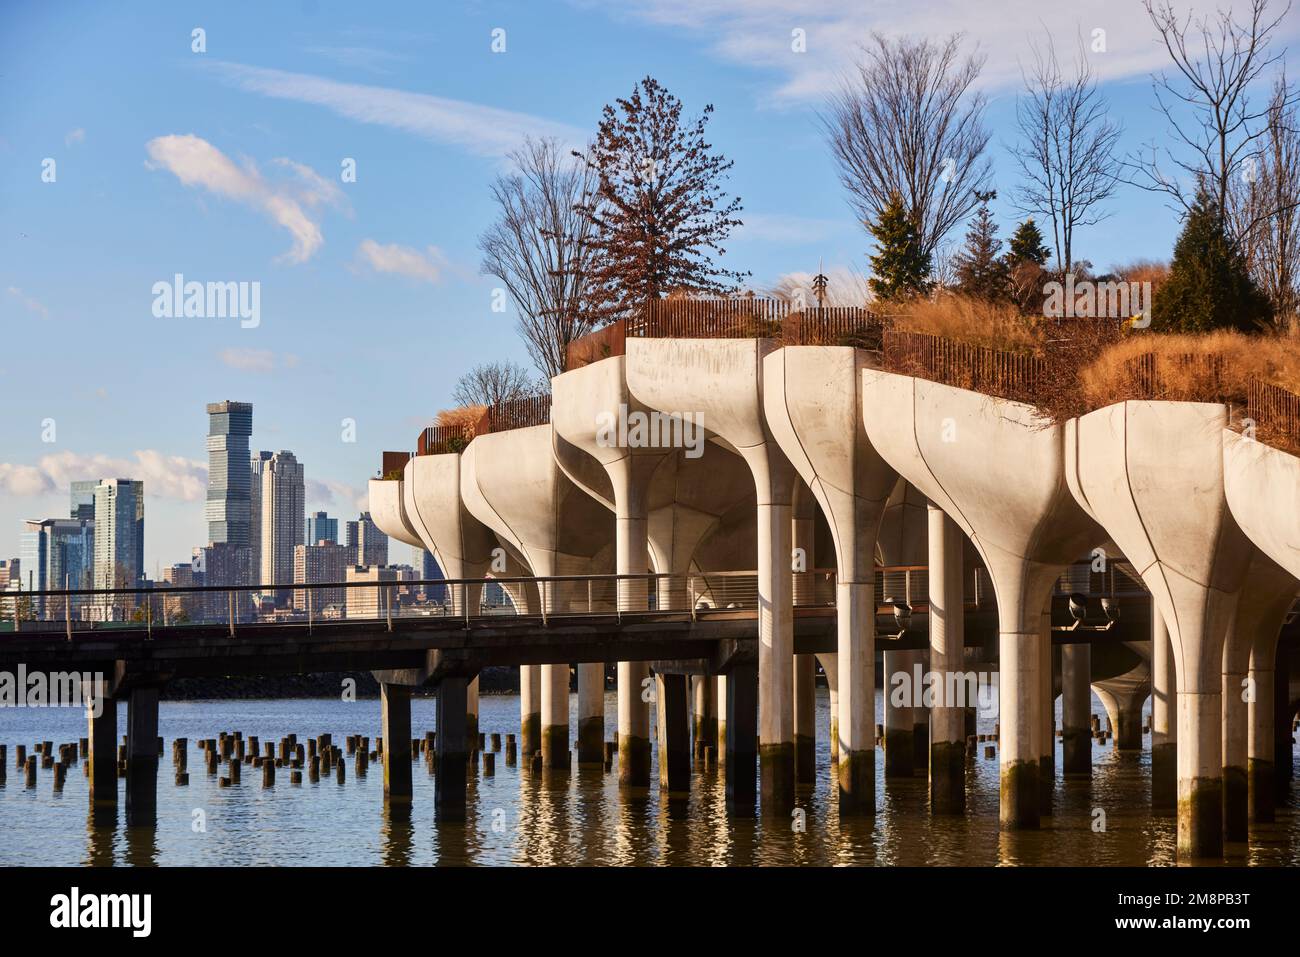 New York City Manhattan parc de l'île flottante côté ouest Little Island Pier 55, Hudson River Park, par le designer anglais Thomas Heatherwick Banque D'Images